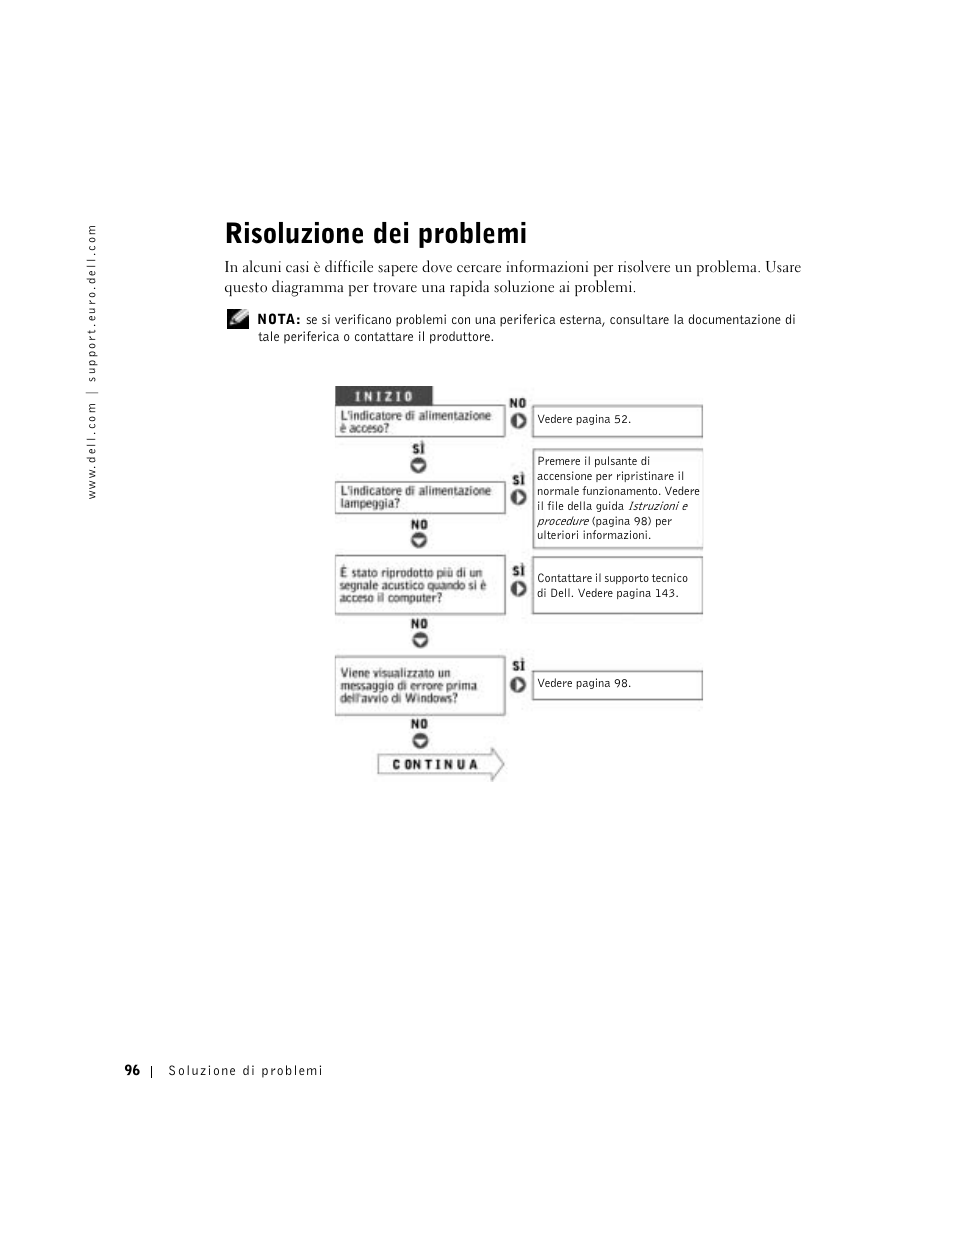 Risoluzione dei problemi | Dell Inspiron 8600 Manuale d'uso | Pagina 96 / 166